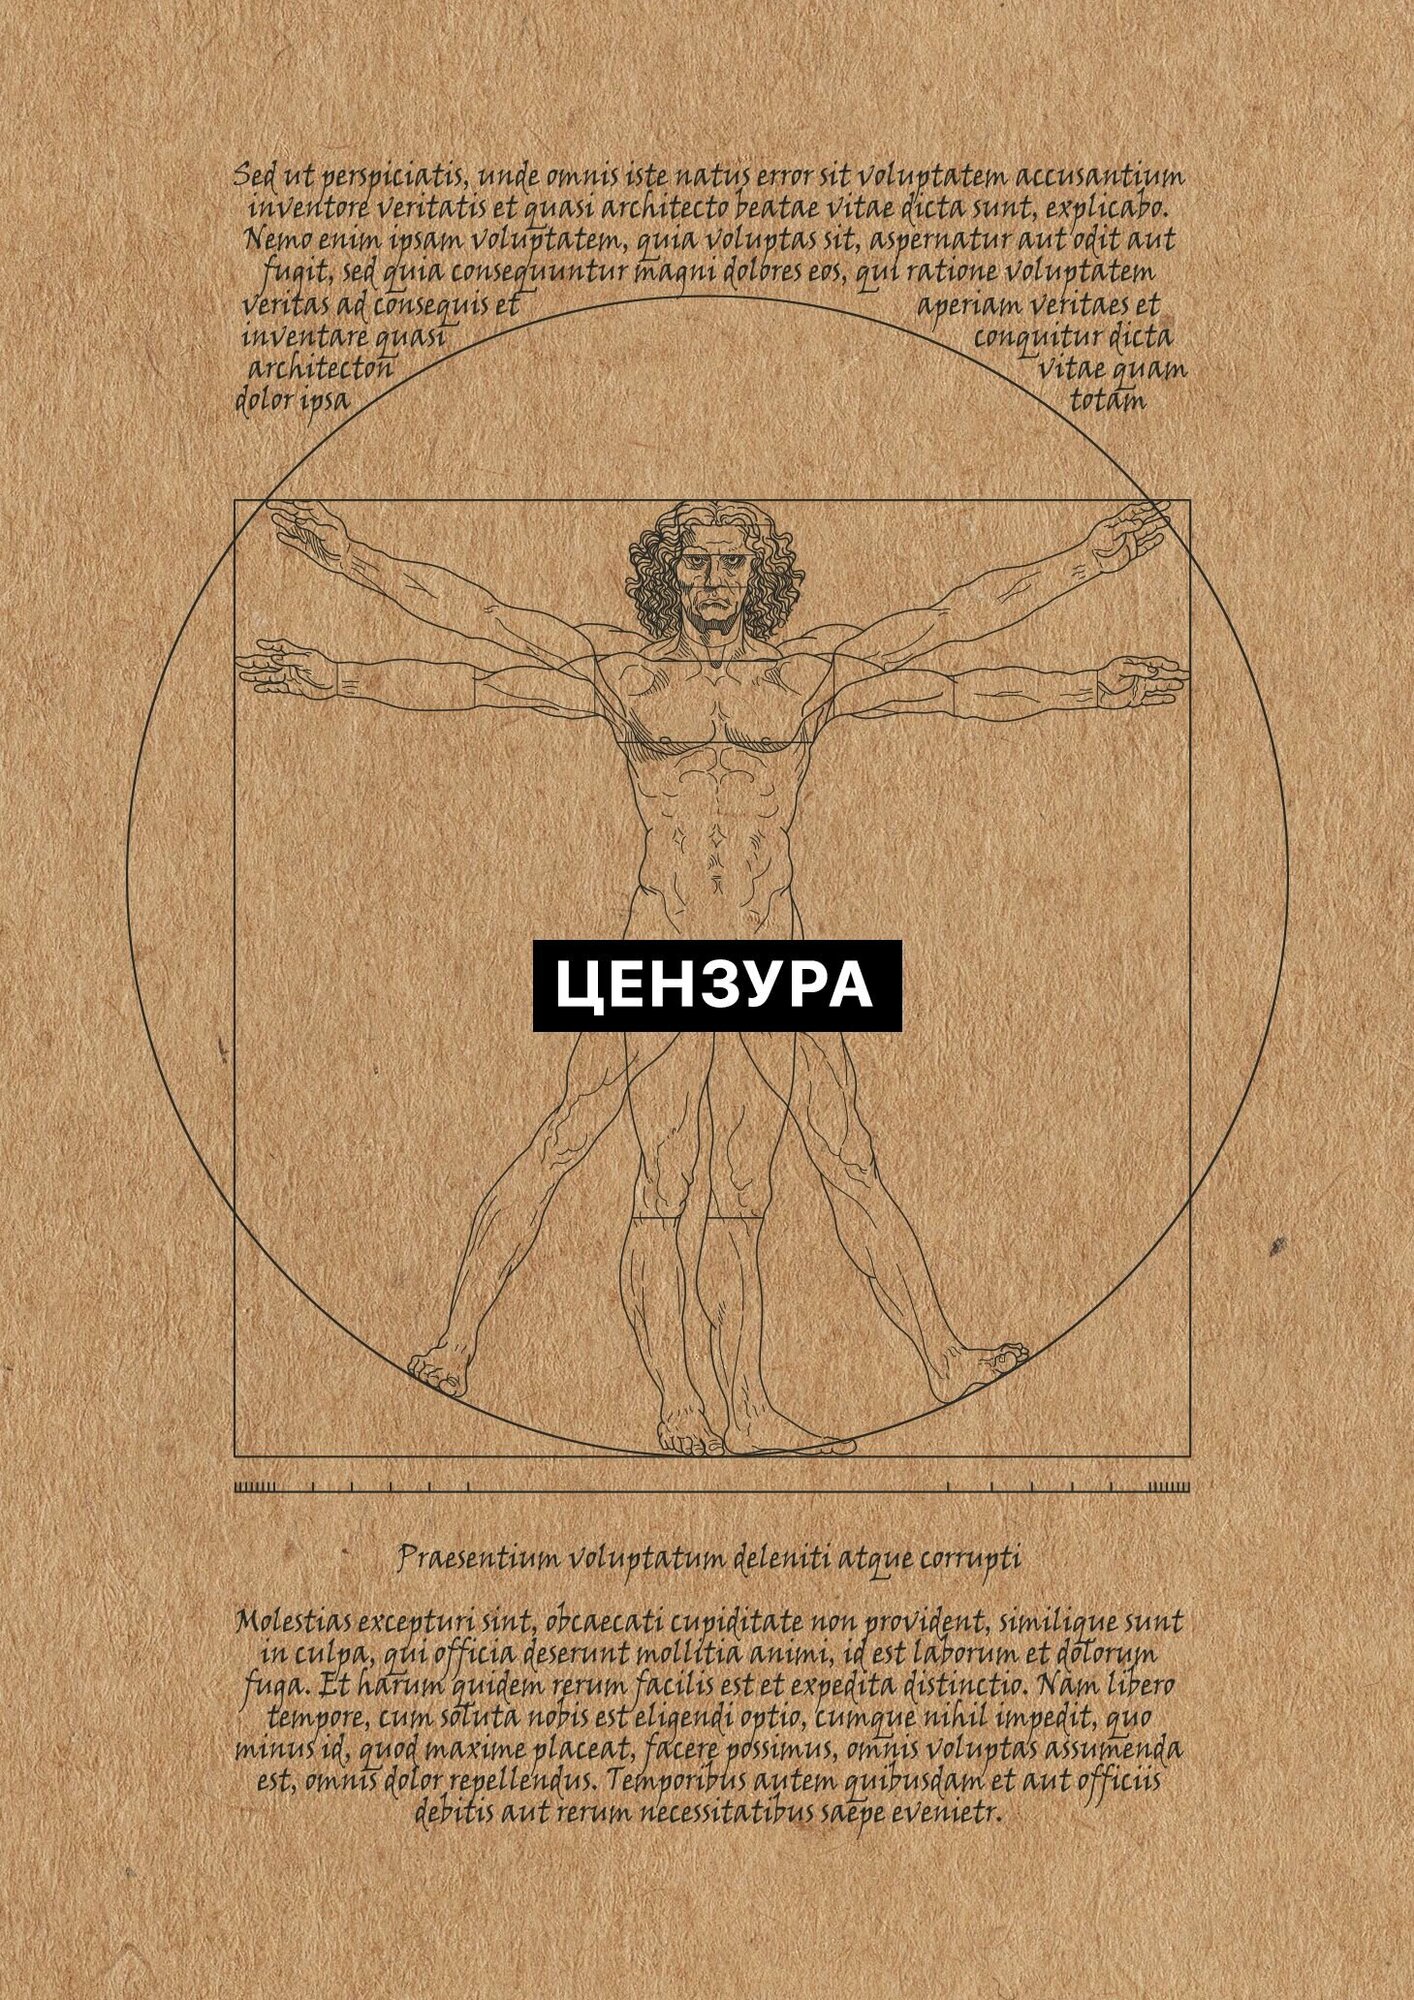 Постер интерьерный "Анатомия Давинча" комплект из 3 штук. А3 формат. Крафт.